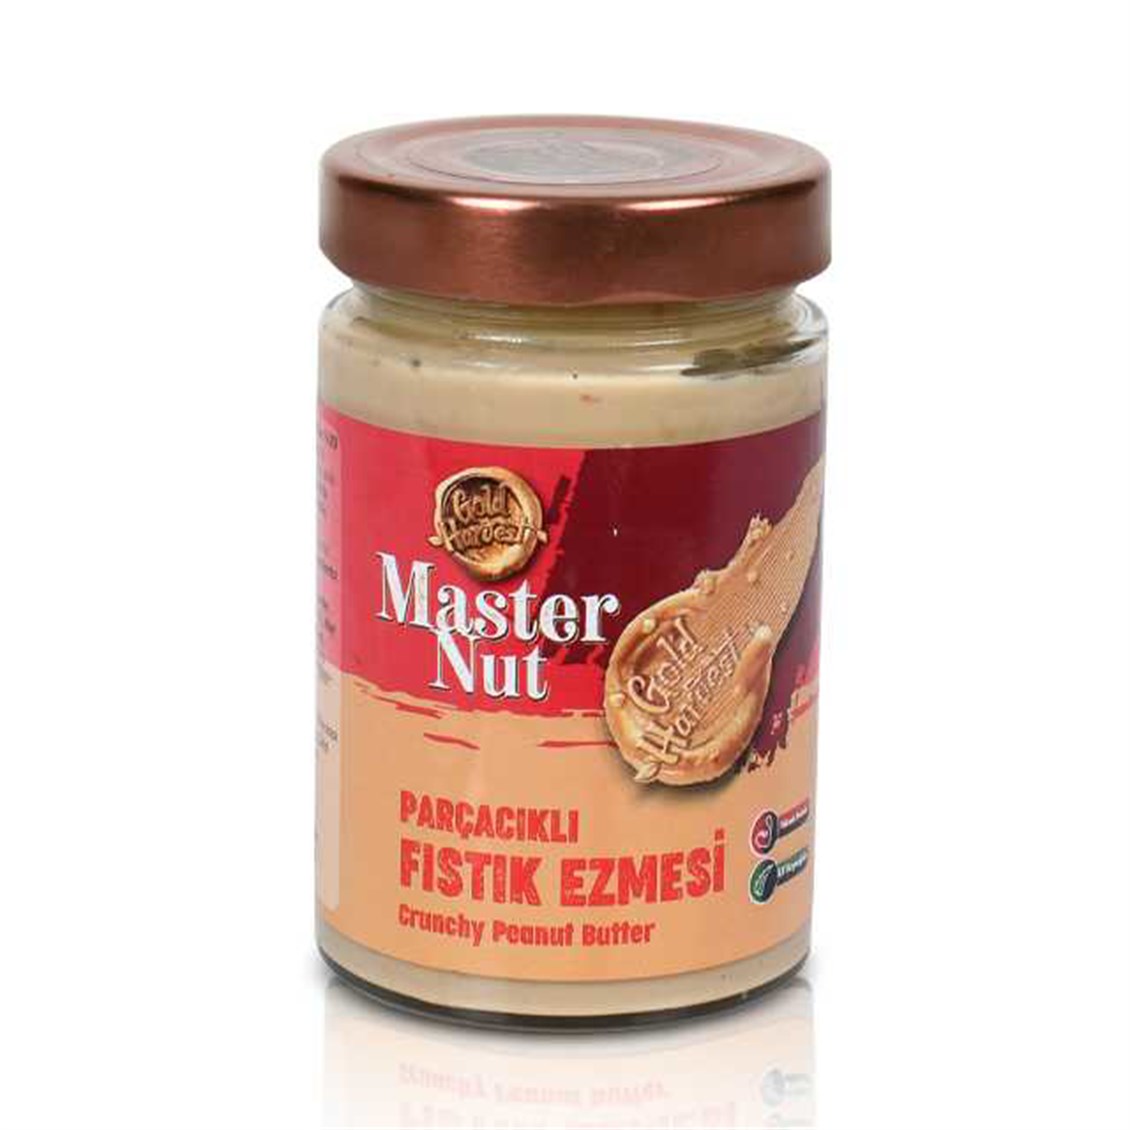 Master Nut Parçaçıklı Fıstık Ezmesi 300 gr - Onur Market